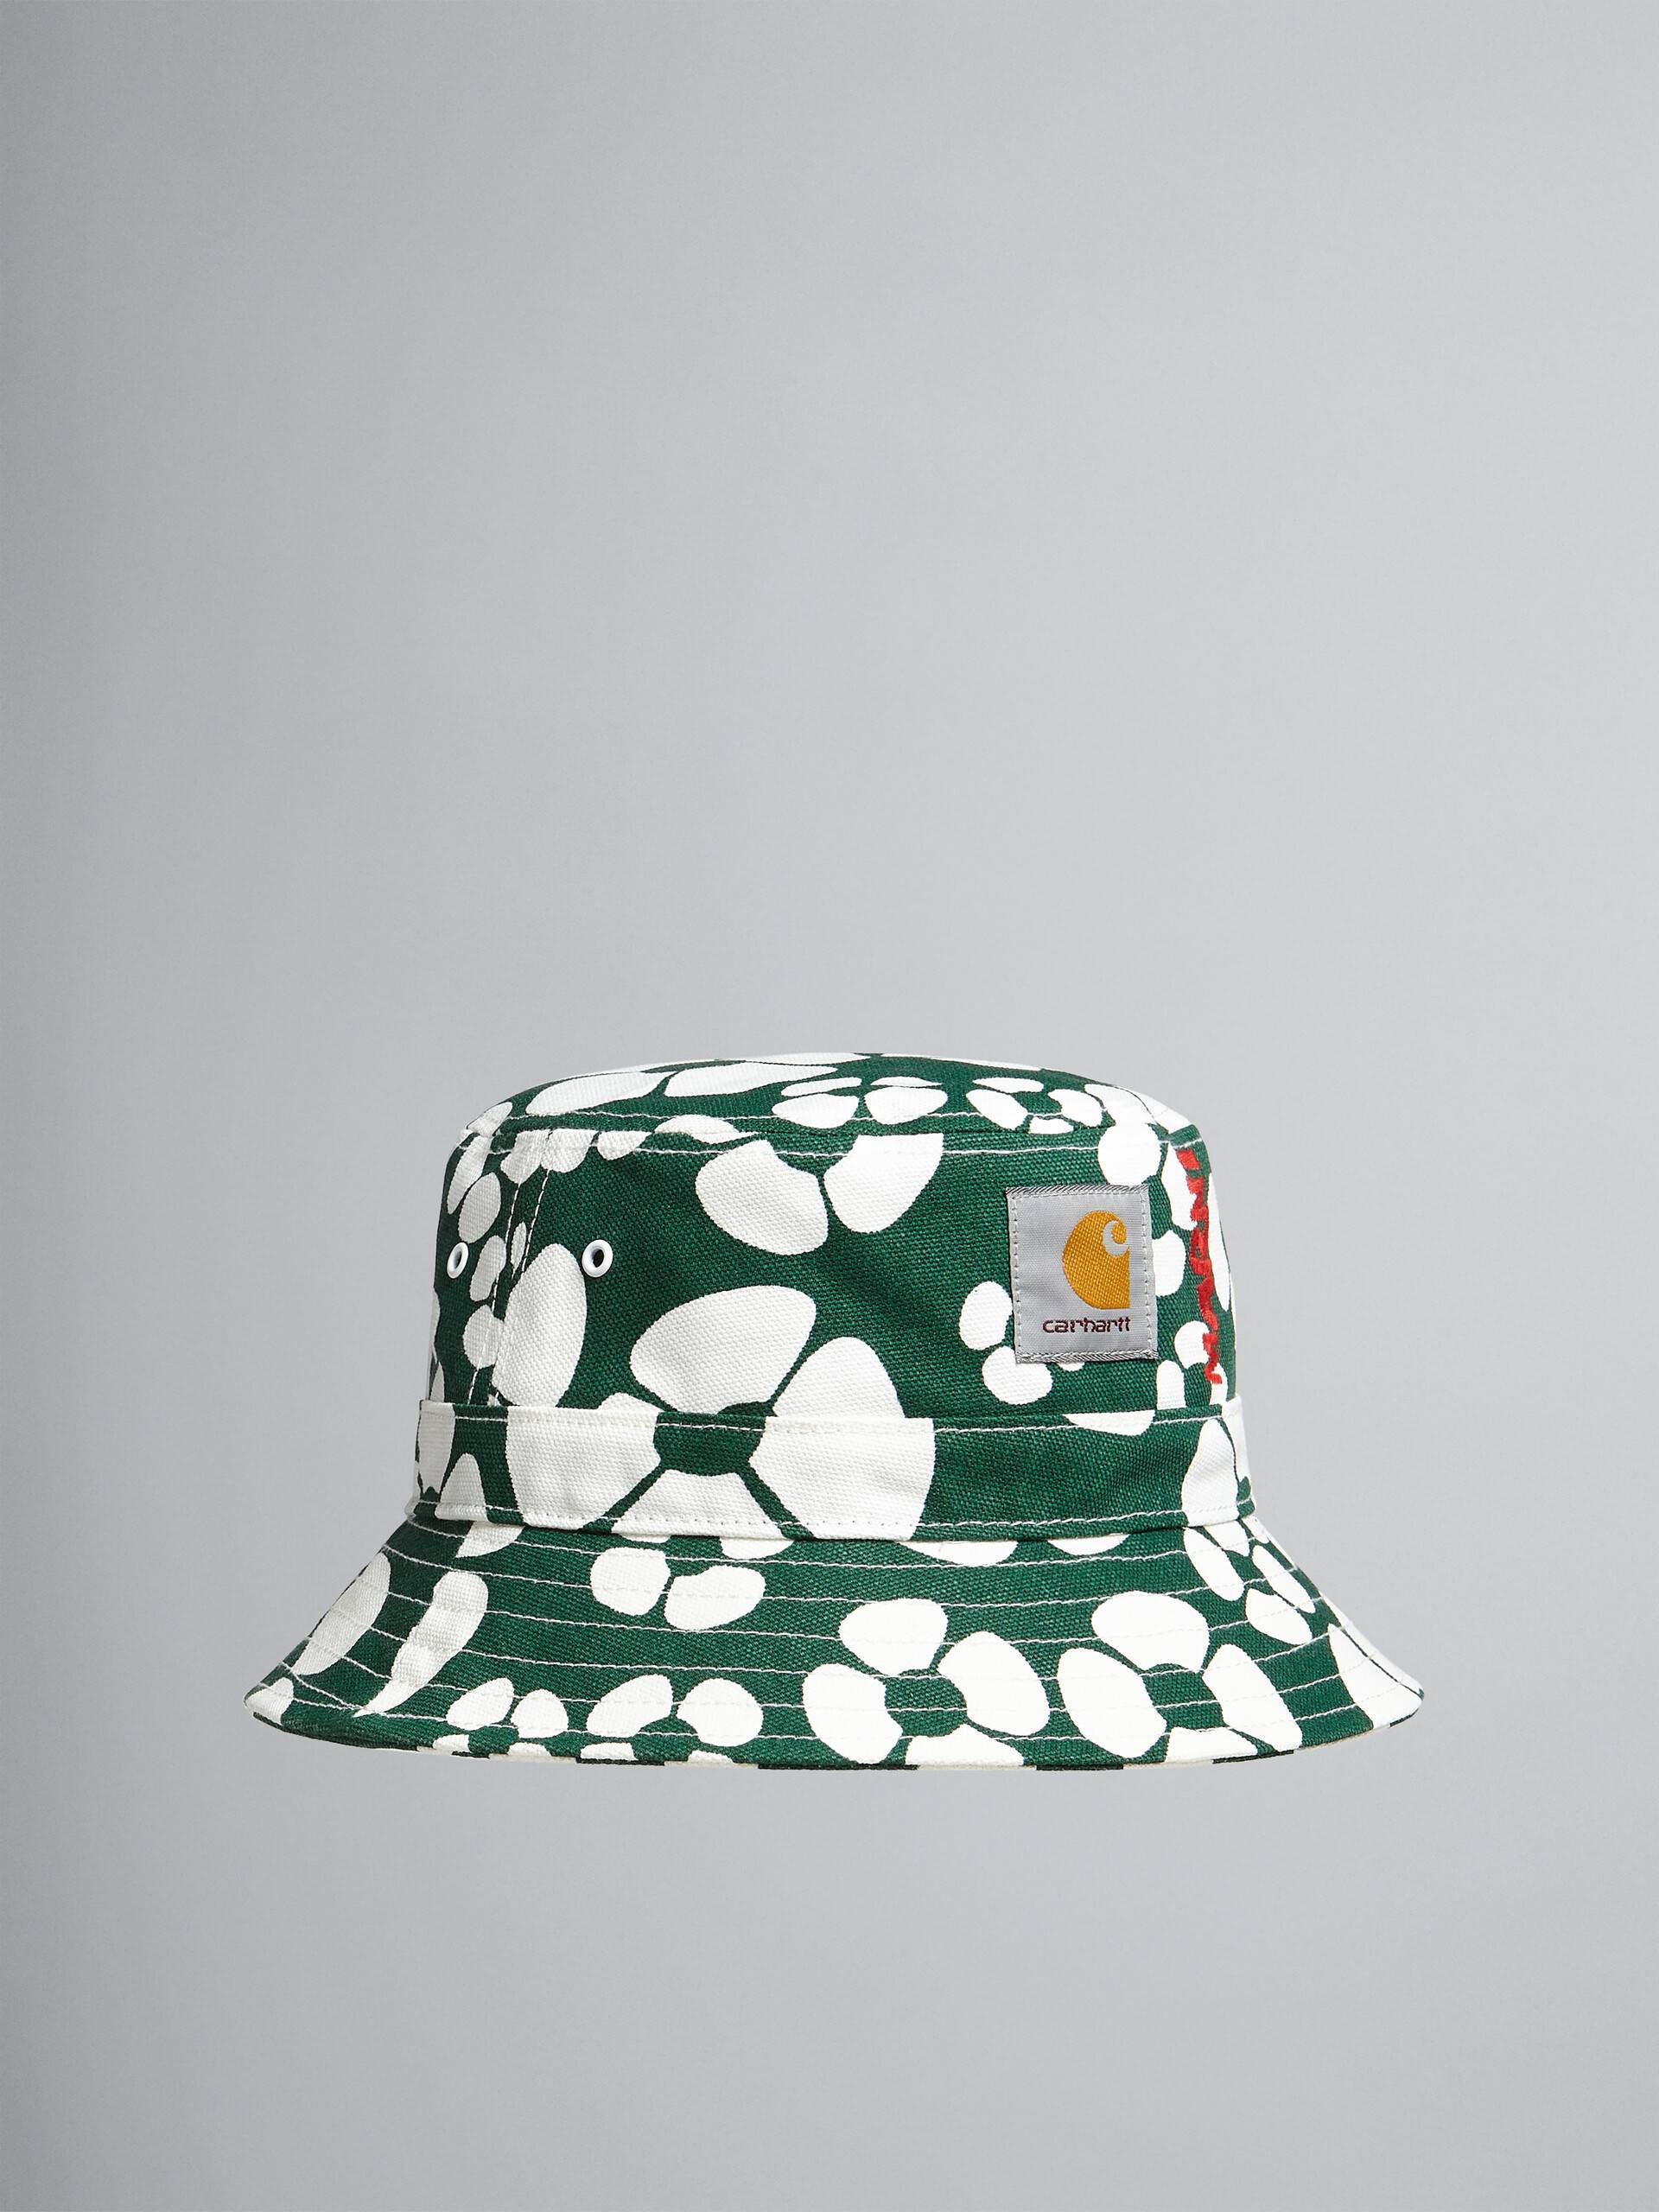 MARNI x Carhartt WIP Bucket Hat